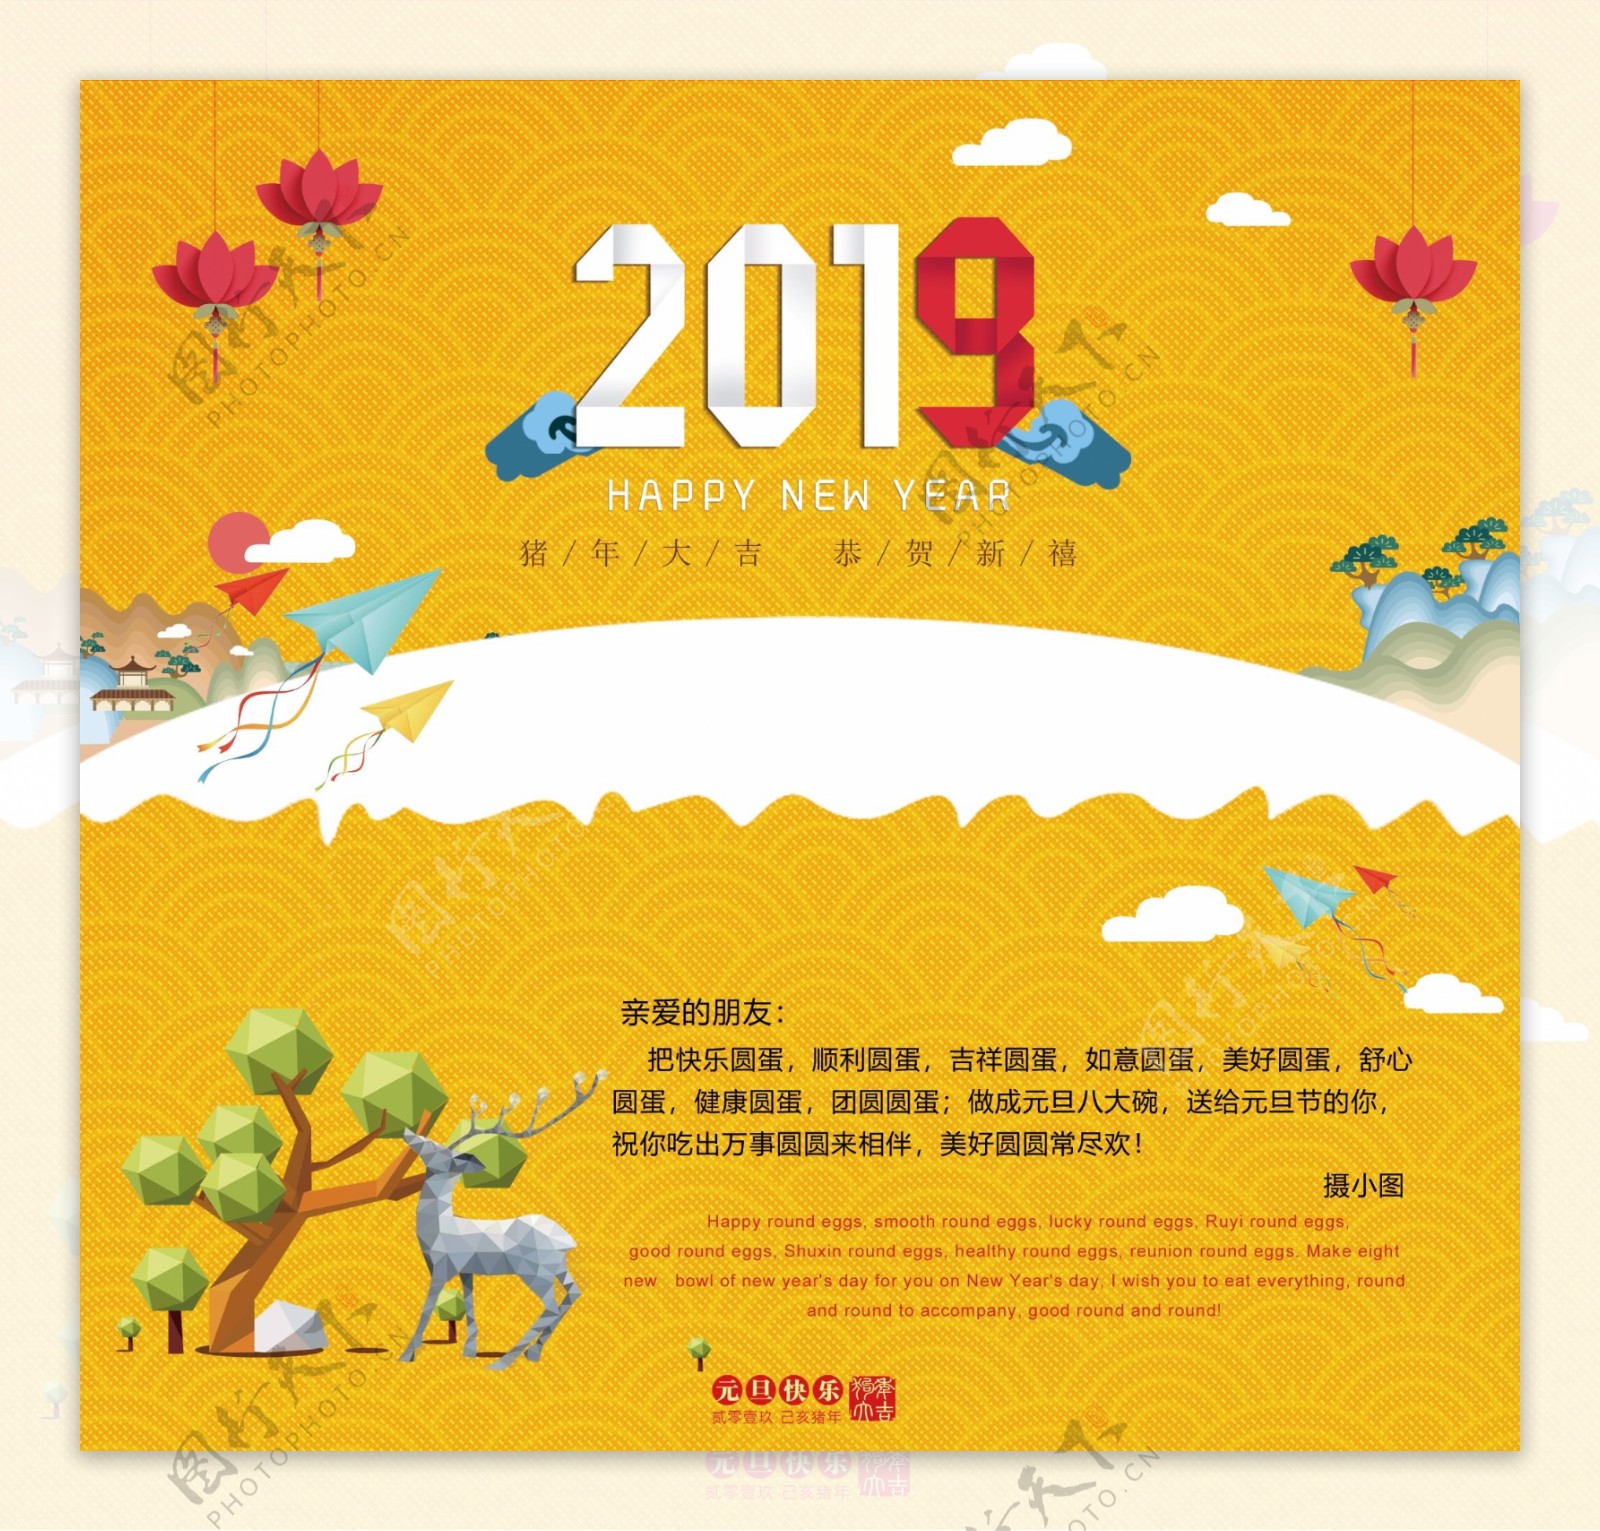 黄色折纸风2019新年快乐贺卡